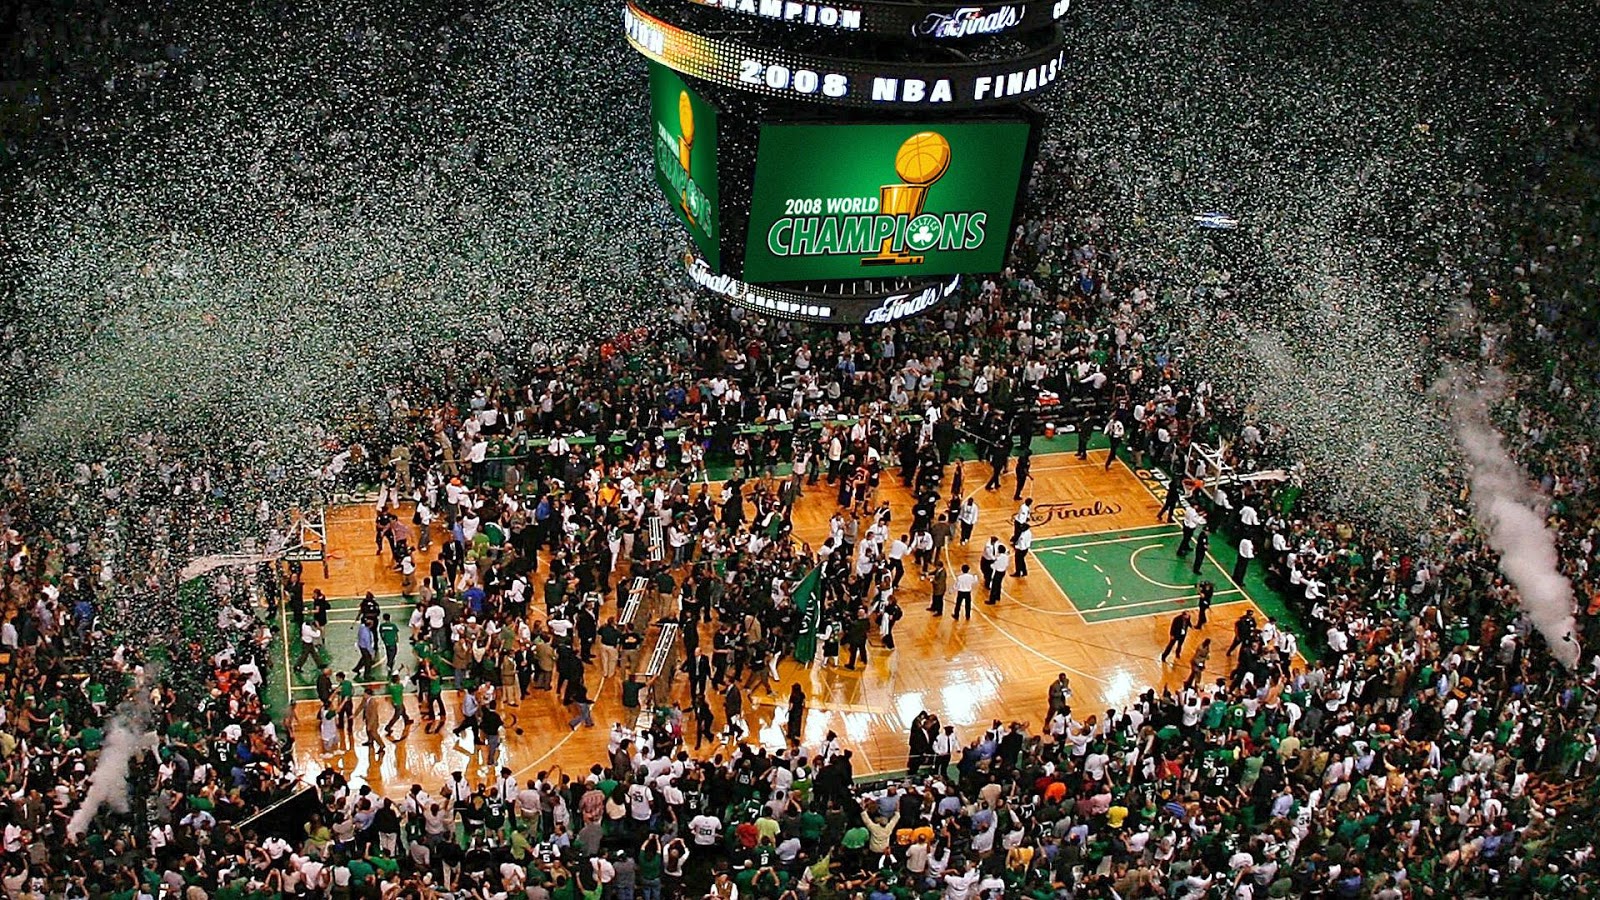 DAR Sports: 2008 NBA Finals- Lakers vs Celtics - DefineARevolution.com